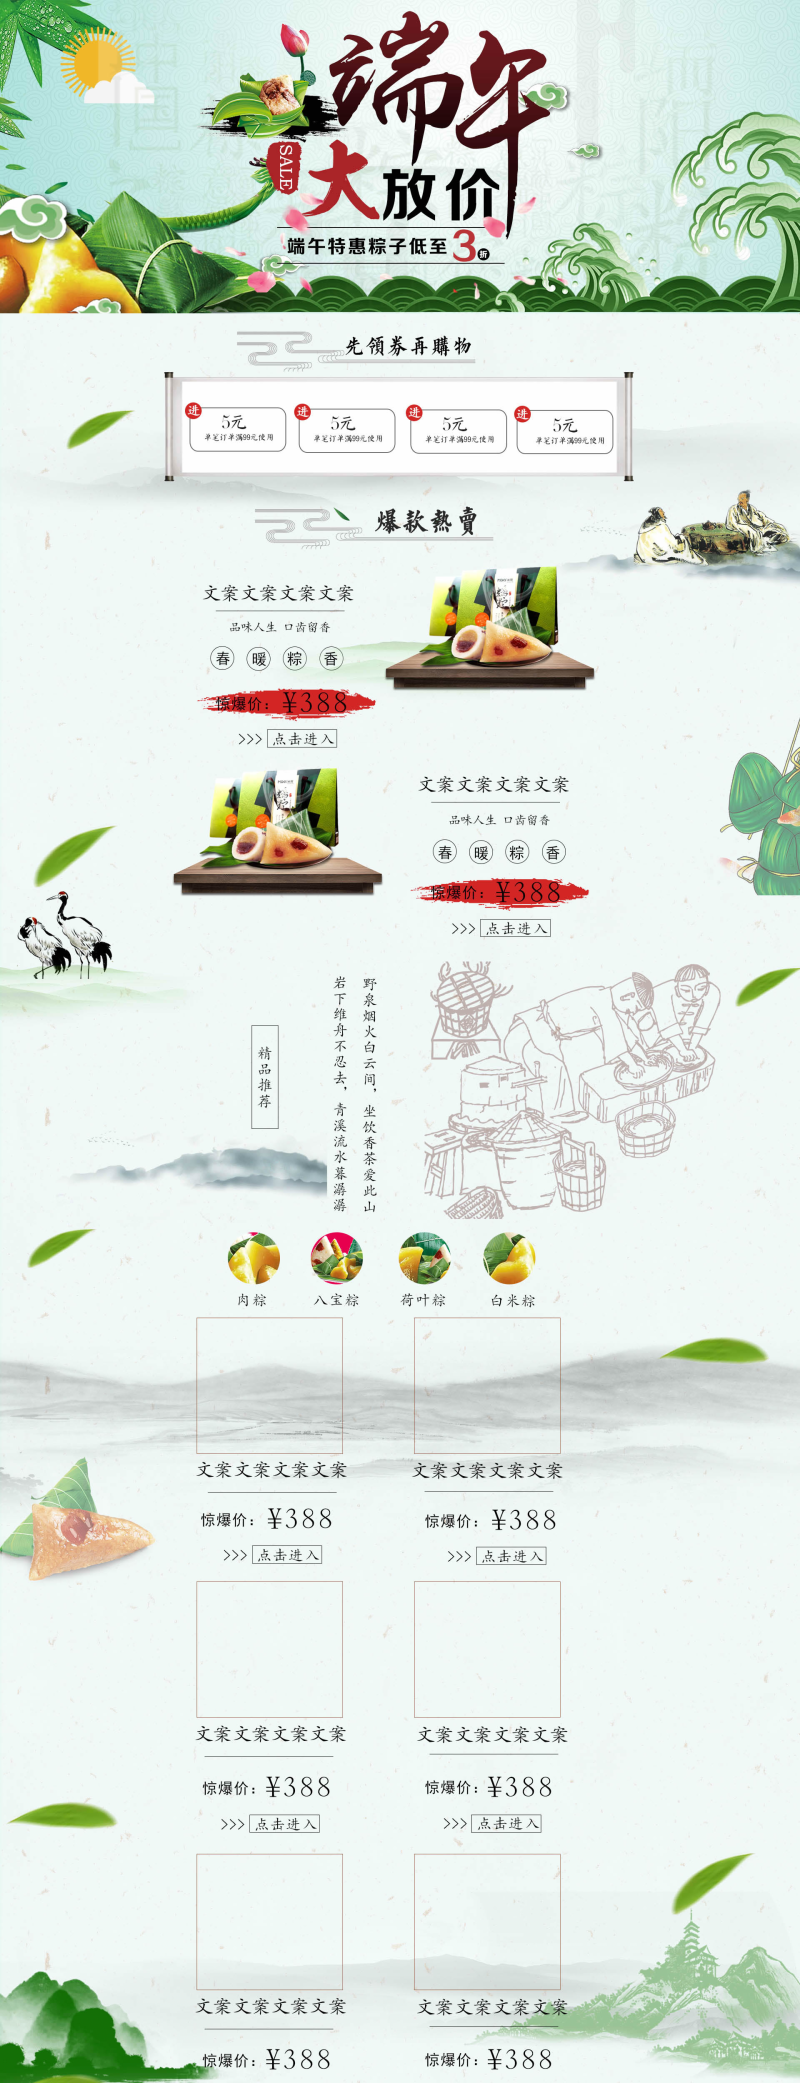 端午节中国风粽子食品店铺装修模板